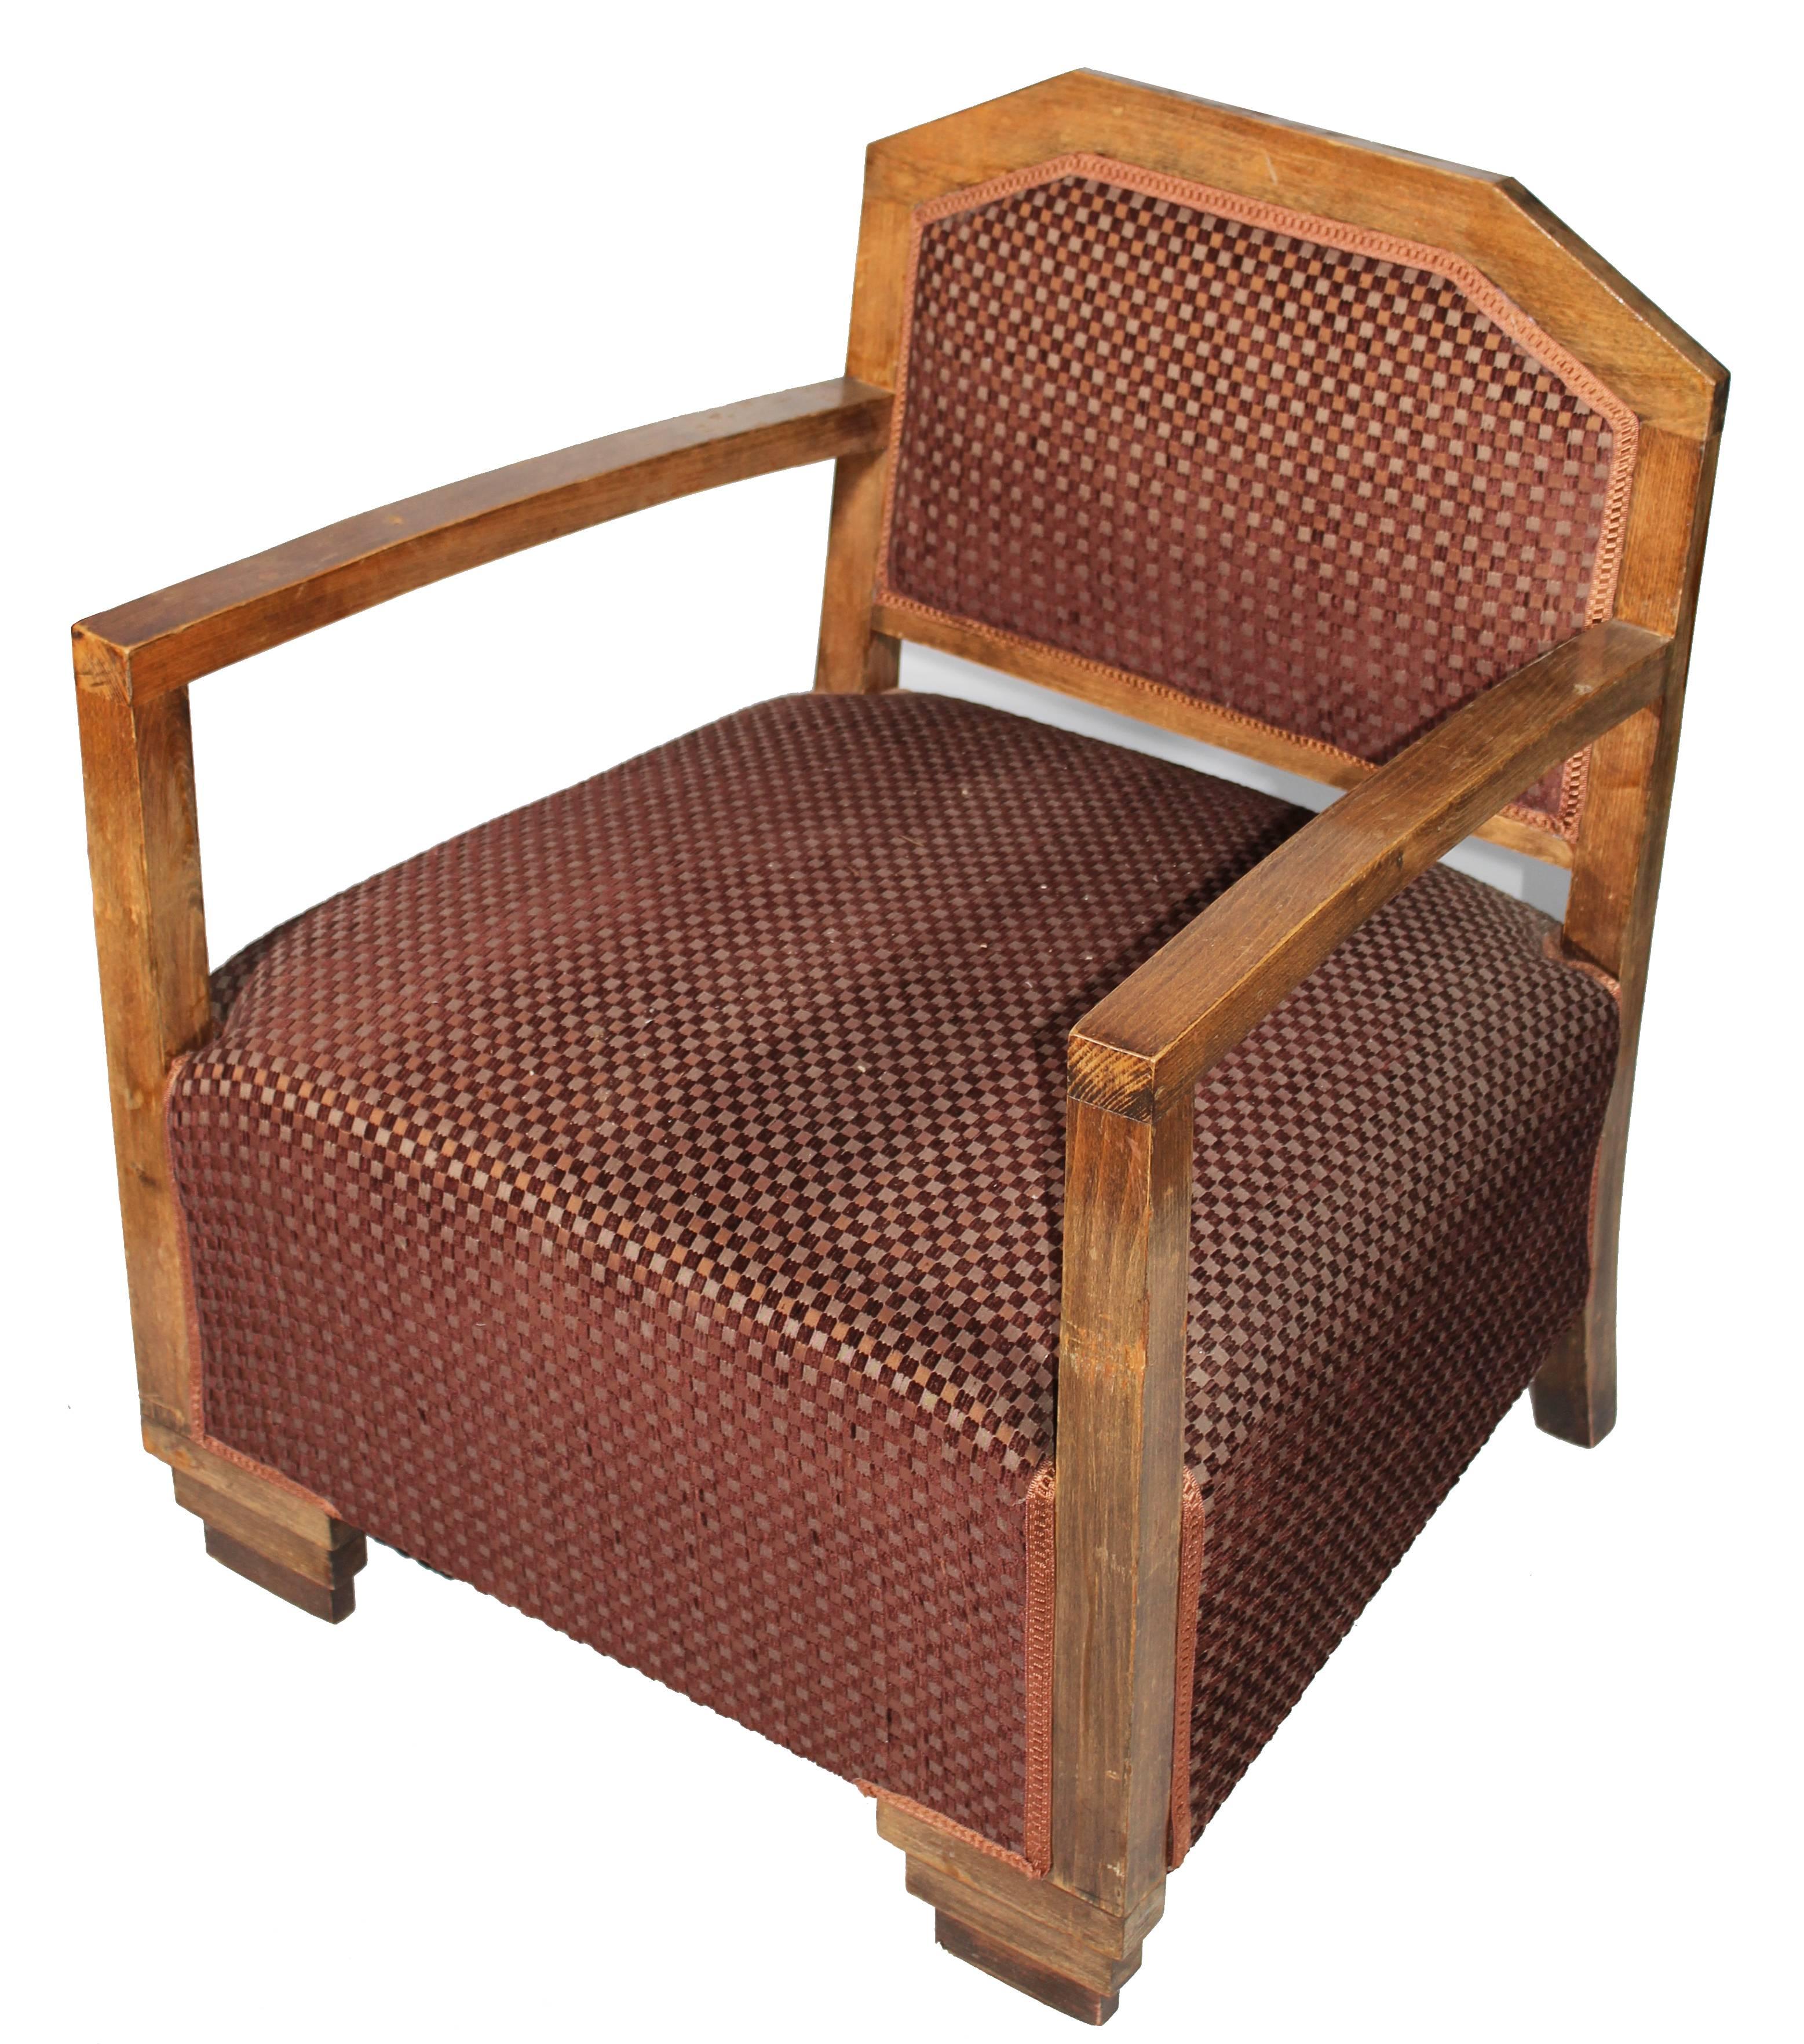 Ensemble de cinq fauteuils en bois recouverts de velours brun. Ils proviennent du célèbre restaurant La Meridiana de Marbella, connu dans les années 1980 pour être le lieu de rencontre de la jet-set de Marbella.


